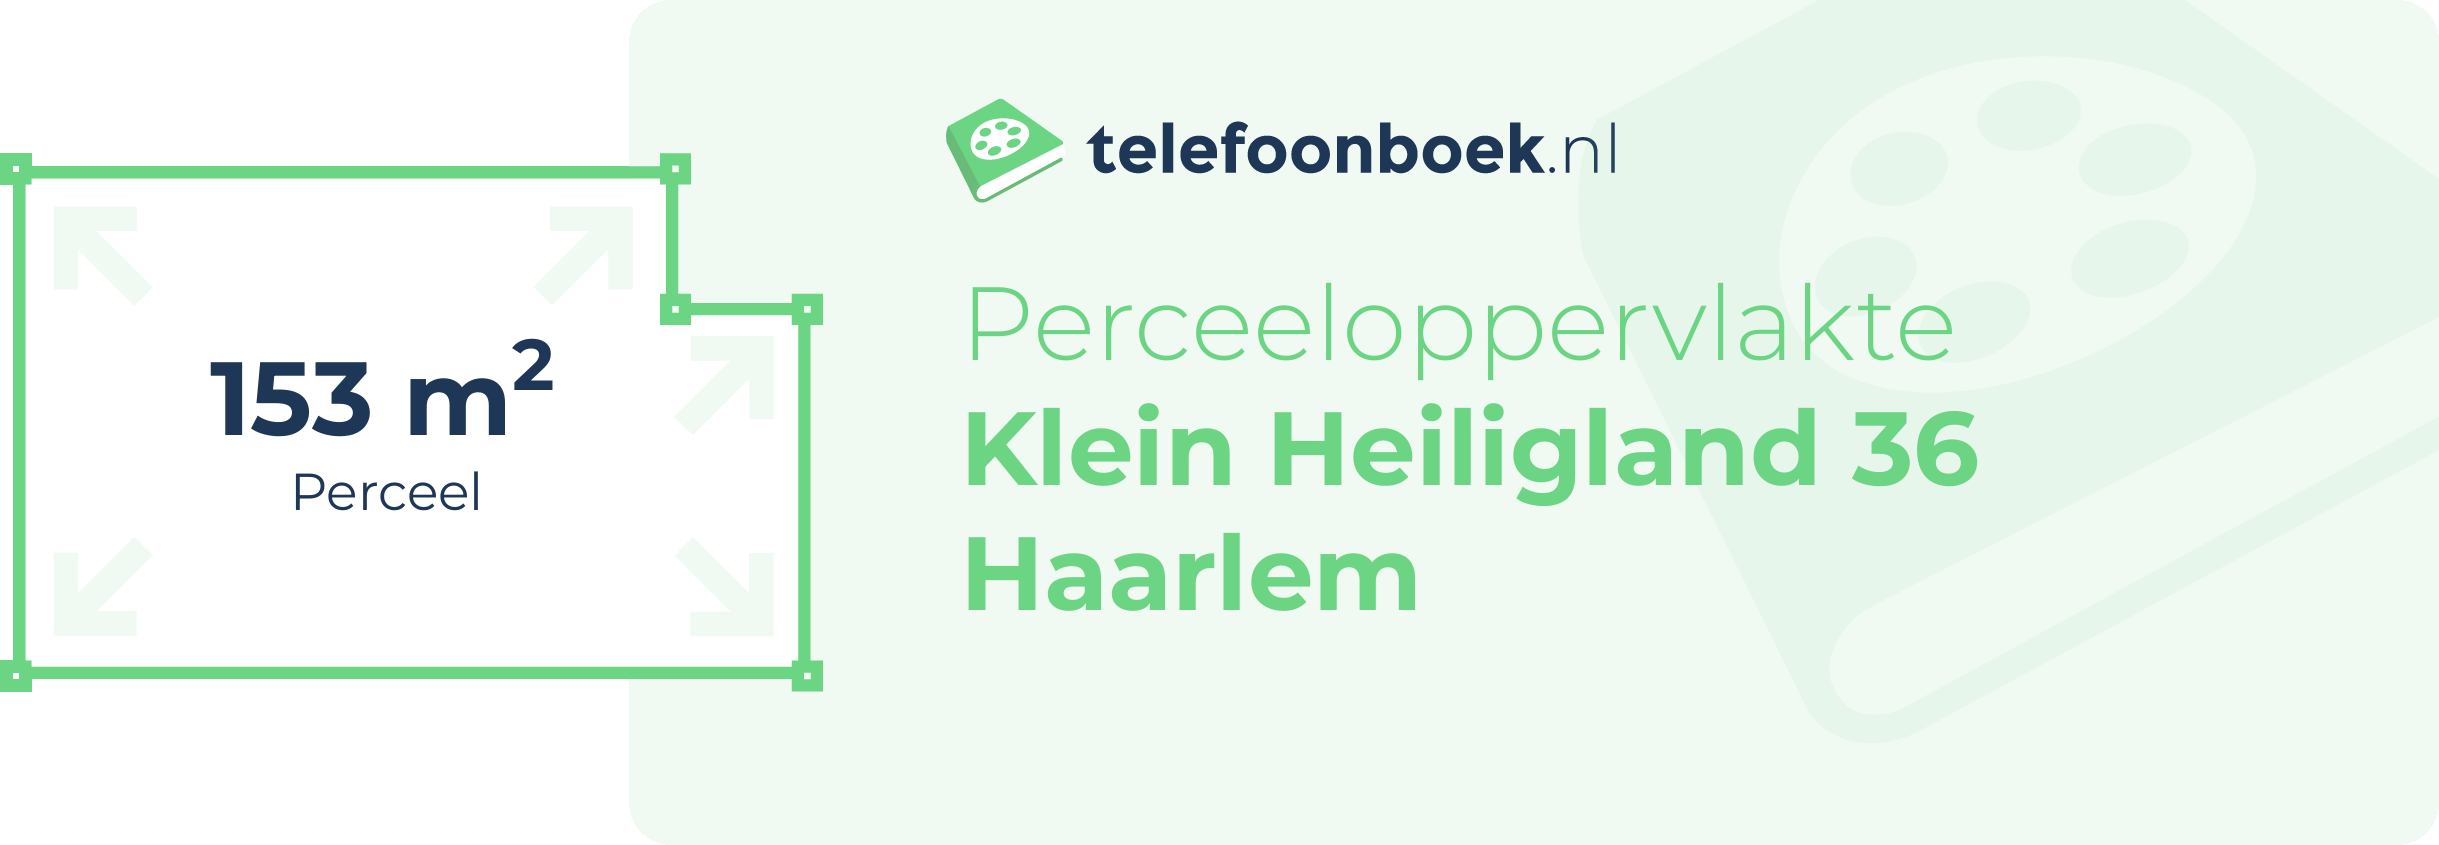 Perceeloppervlakte Klein Heiligland 36 Haarlem